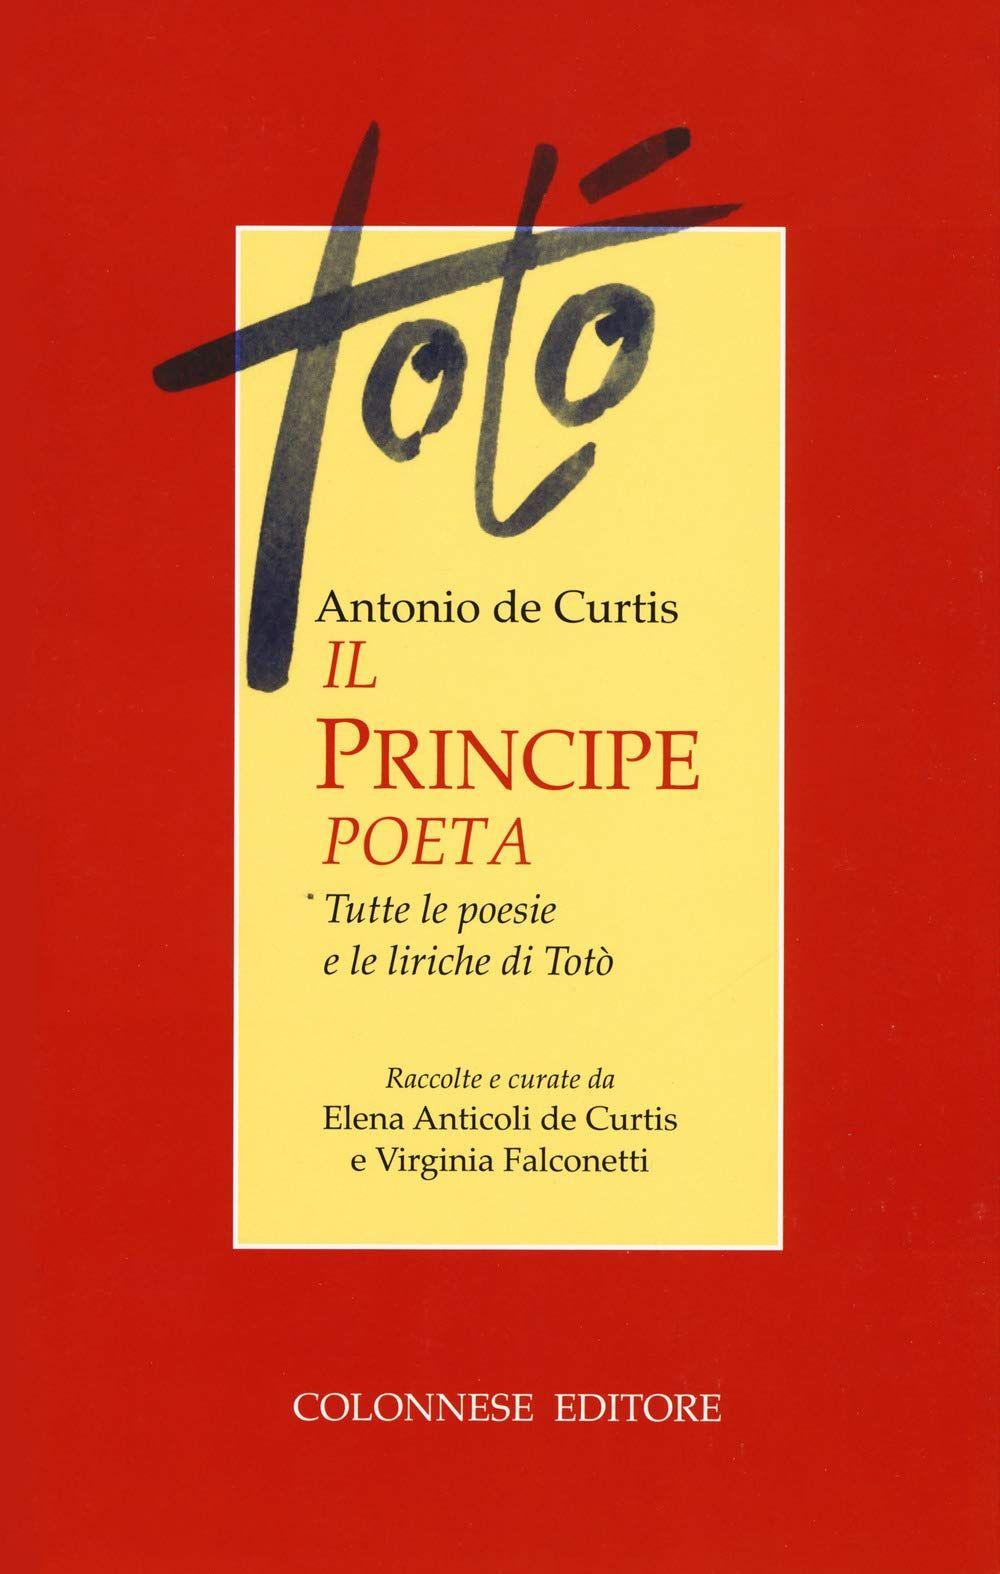 Libro "Il principe poeta" di Totò